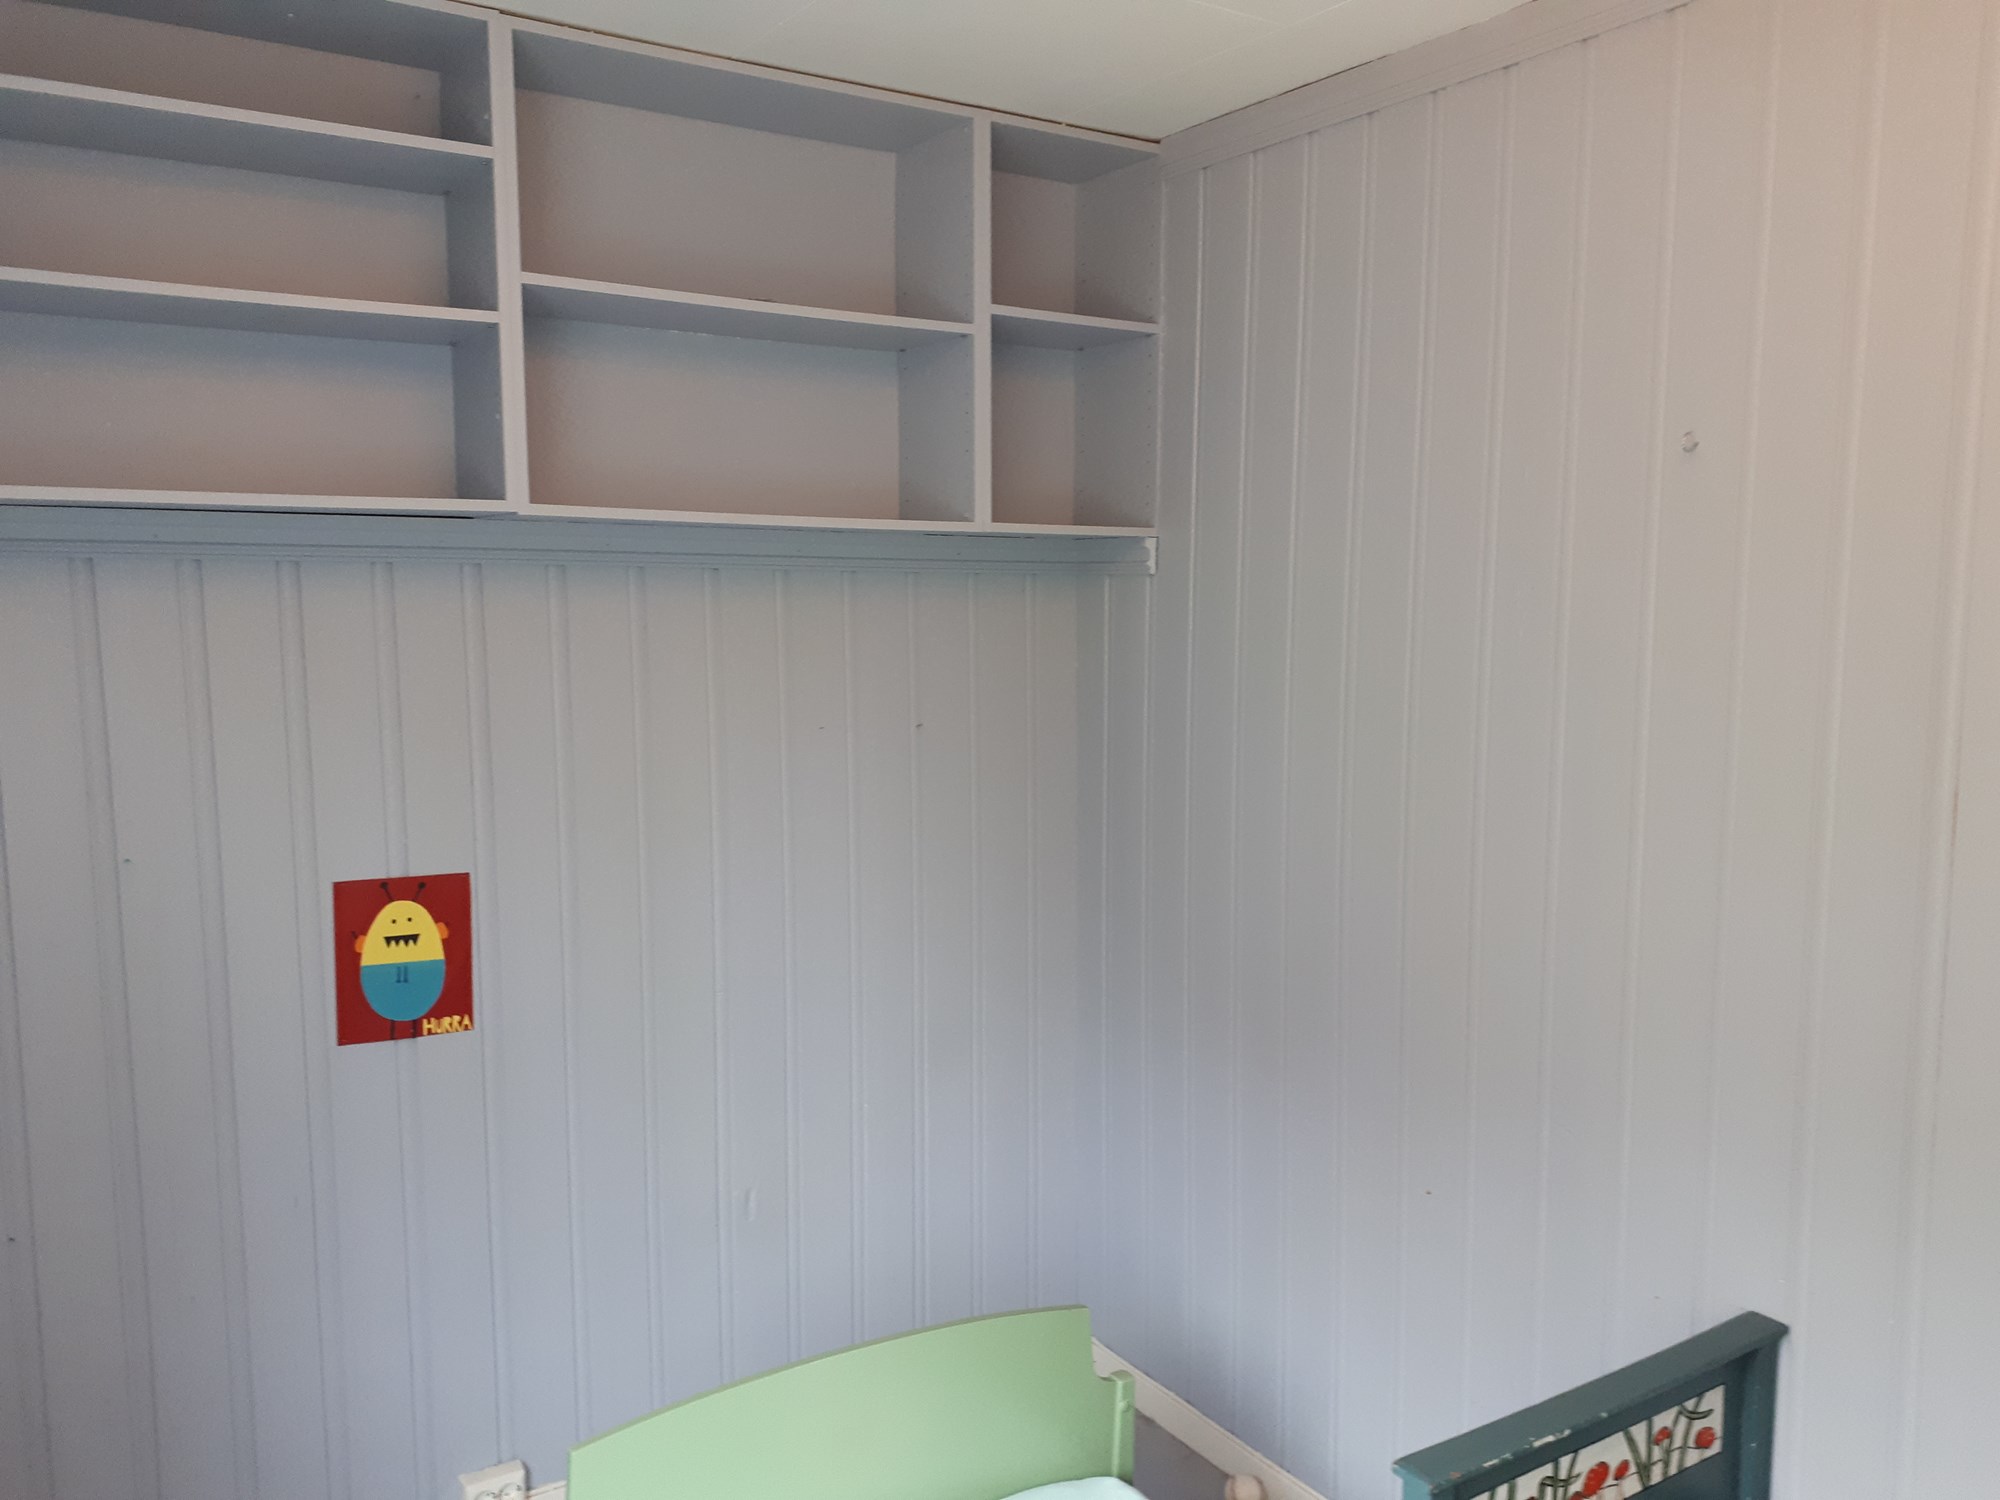 Oppgradering og oppussing av barnerom på 9 m2 - 20180620_093915.jpg - vifteovn